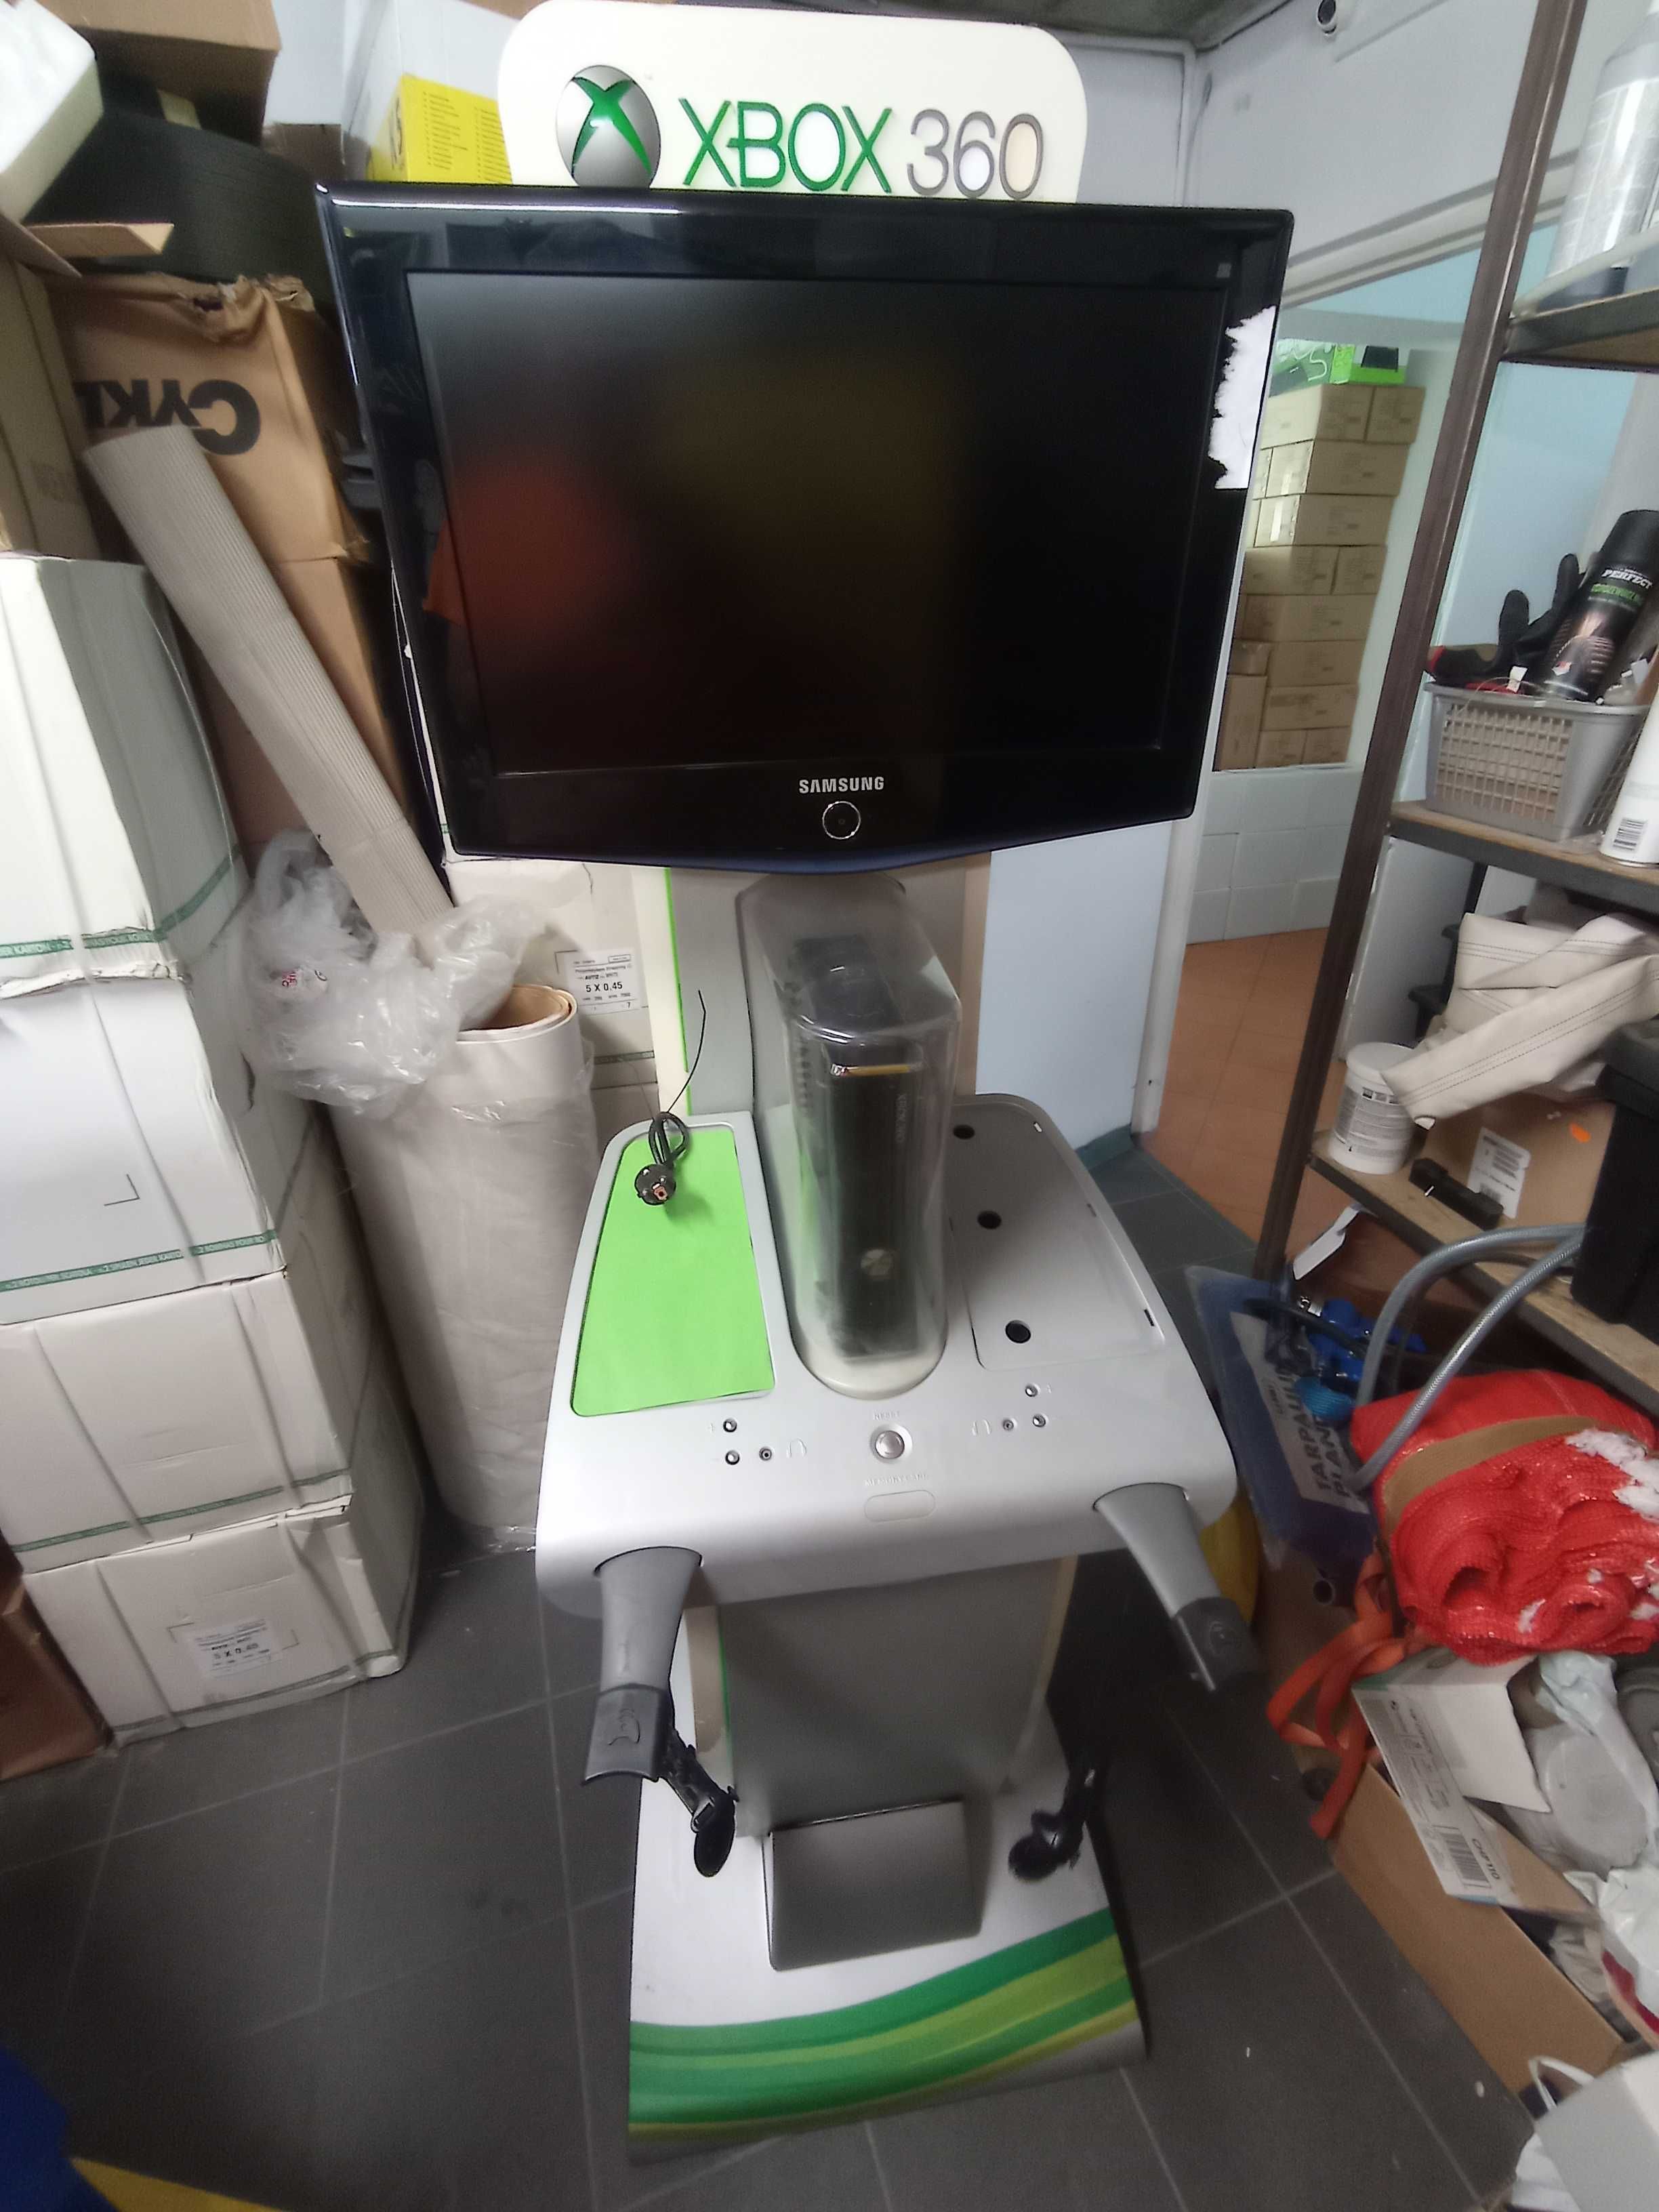 Automat do gier xBox 360 monitor Samsung zarobkowy